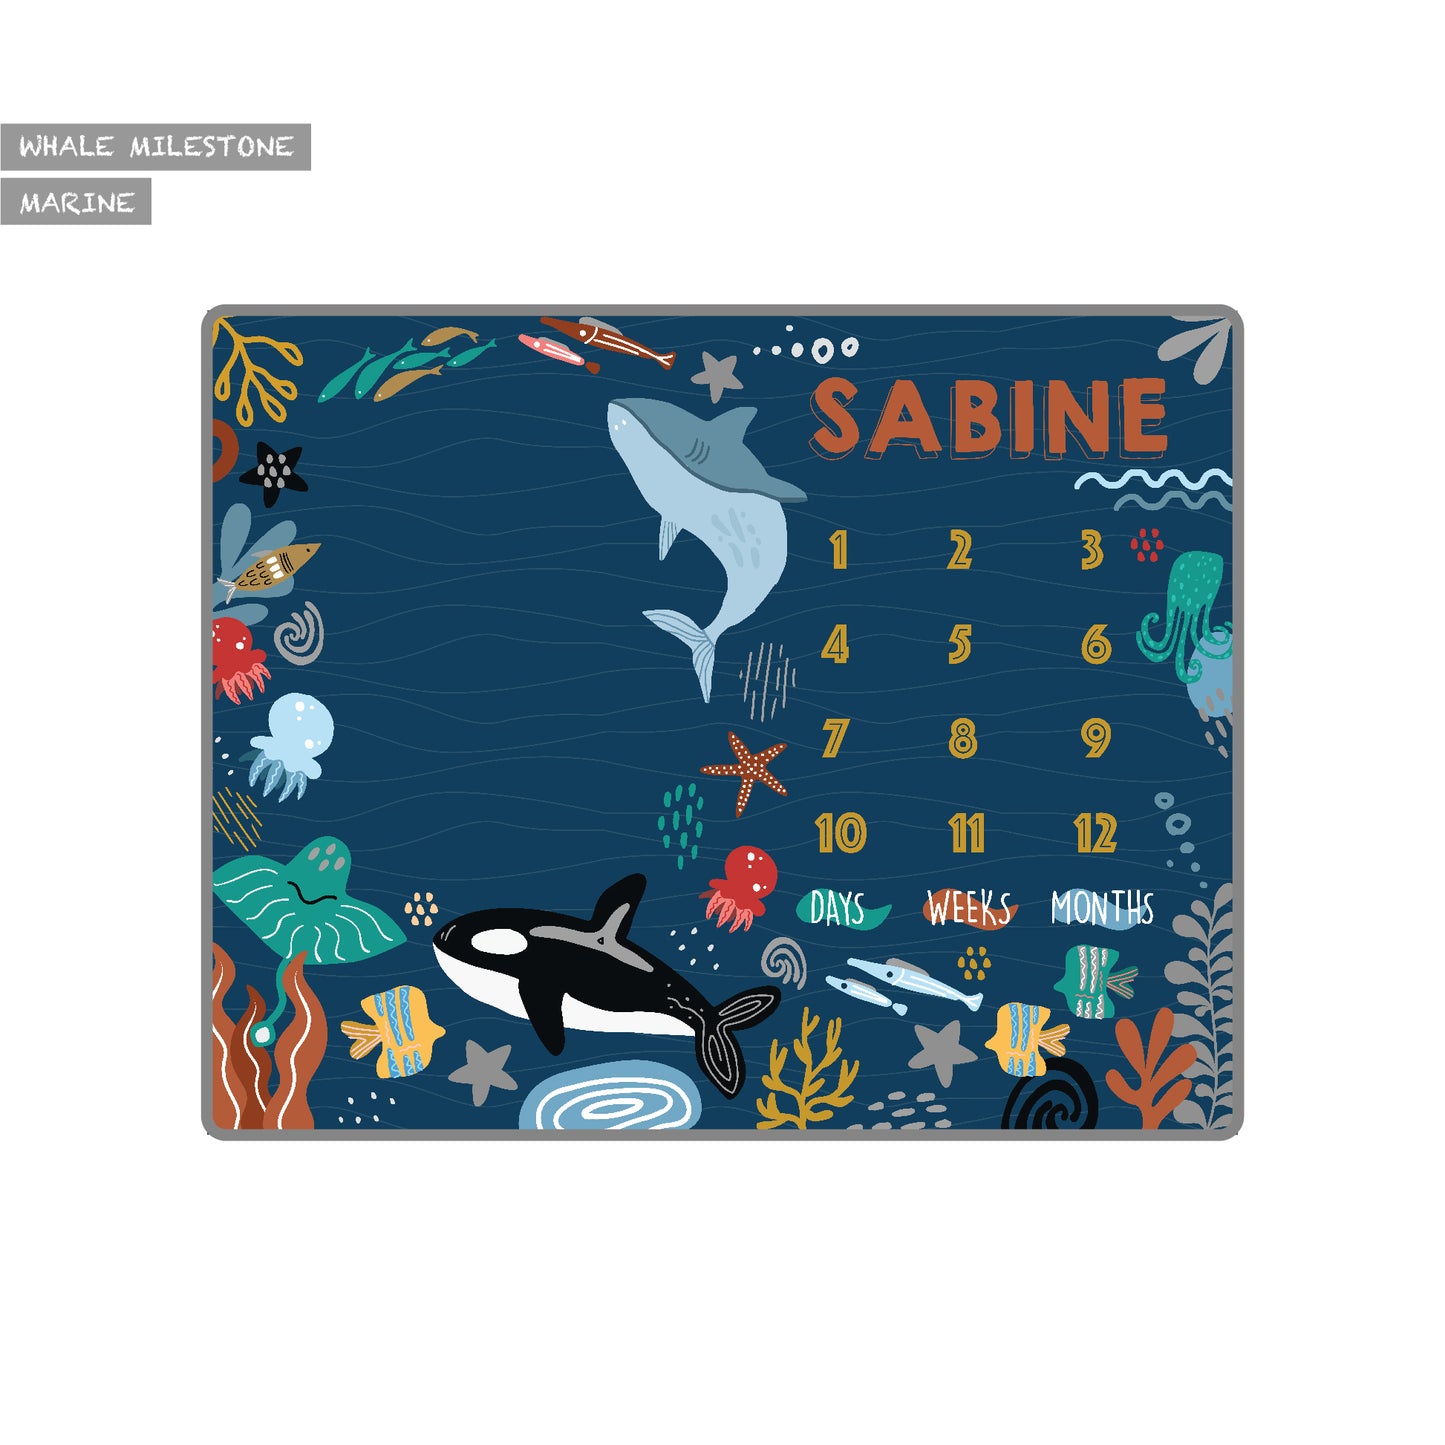 Maison Elmesa Baby Blanket - Whale Milestone Series